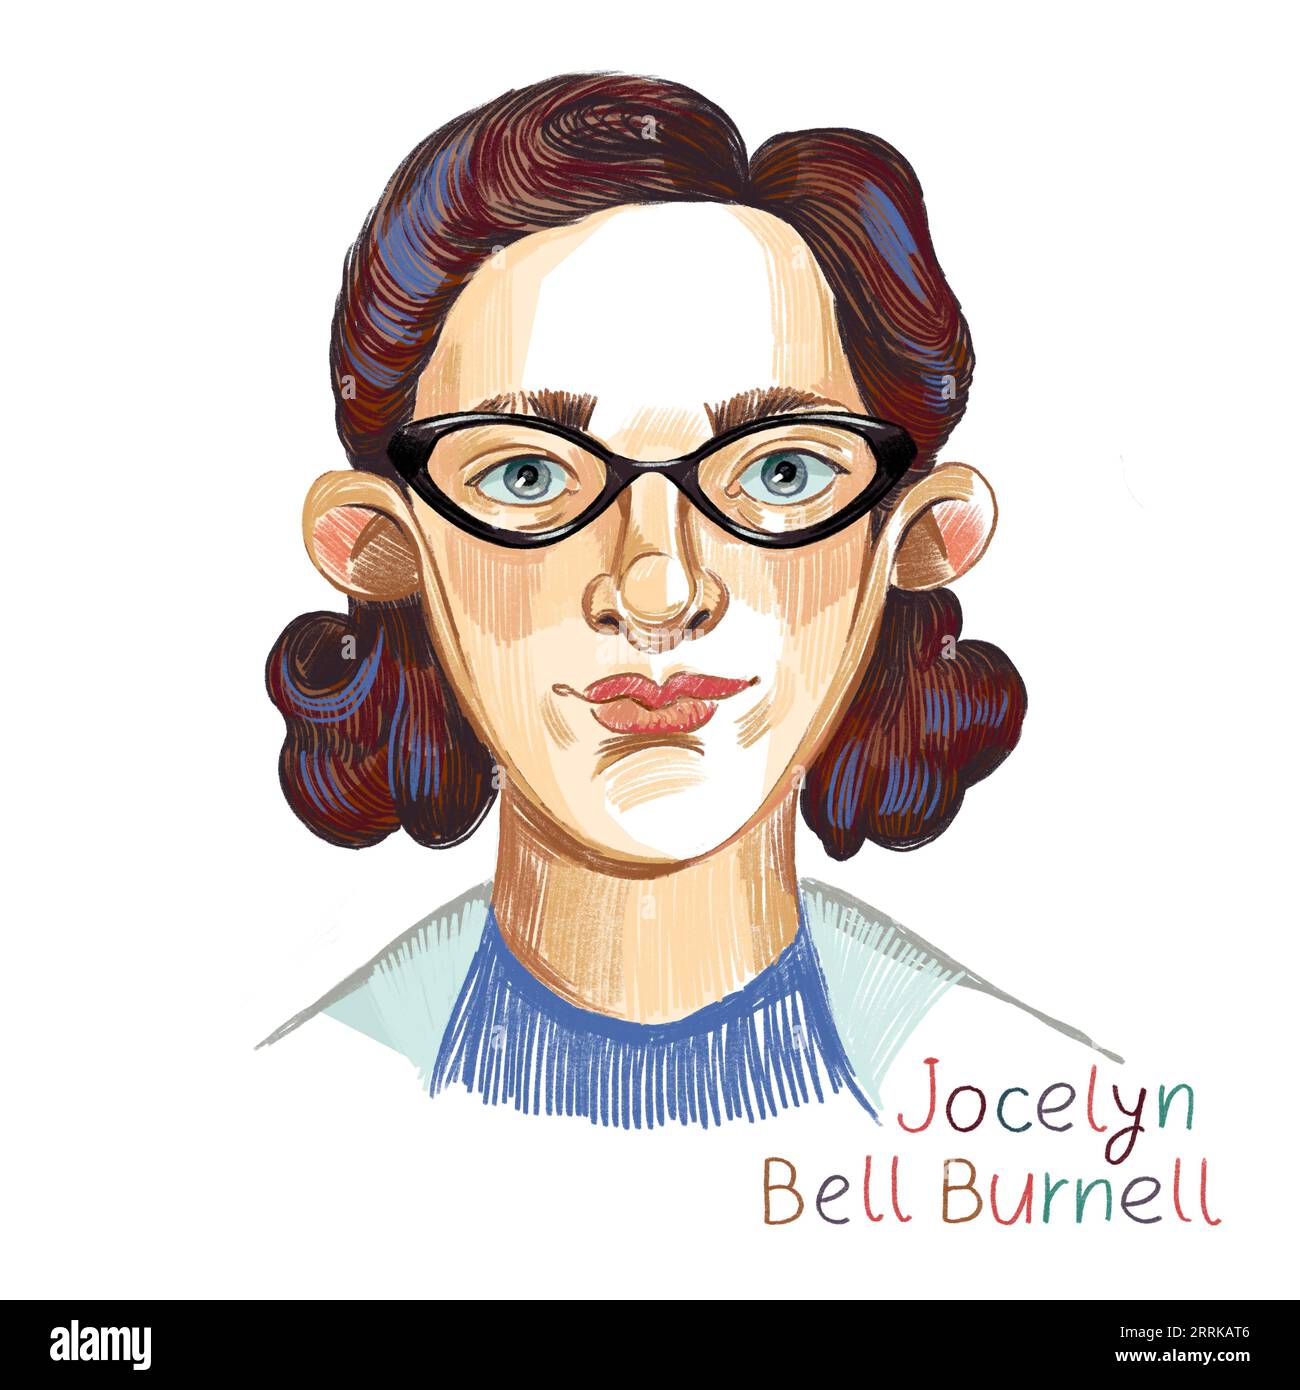 Jocelyn Bell Burnell matita colorata ritratto tratteggiato su sfondo bianco. Astrofisico dell'Irlanda del Nord che, come studente post-laurea, discoteca Foto Stock